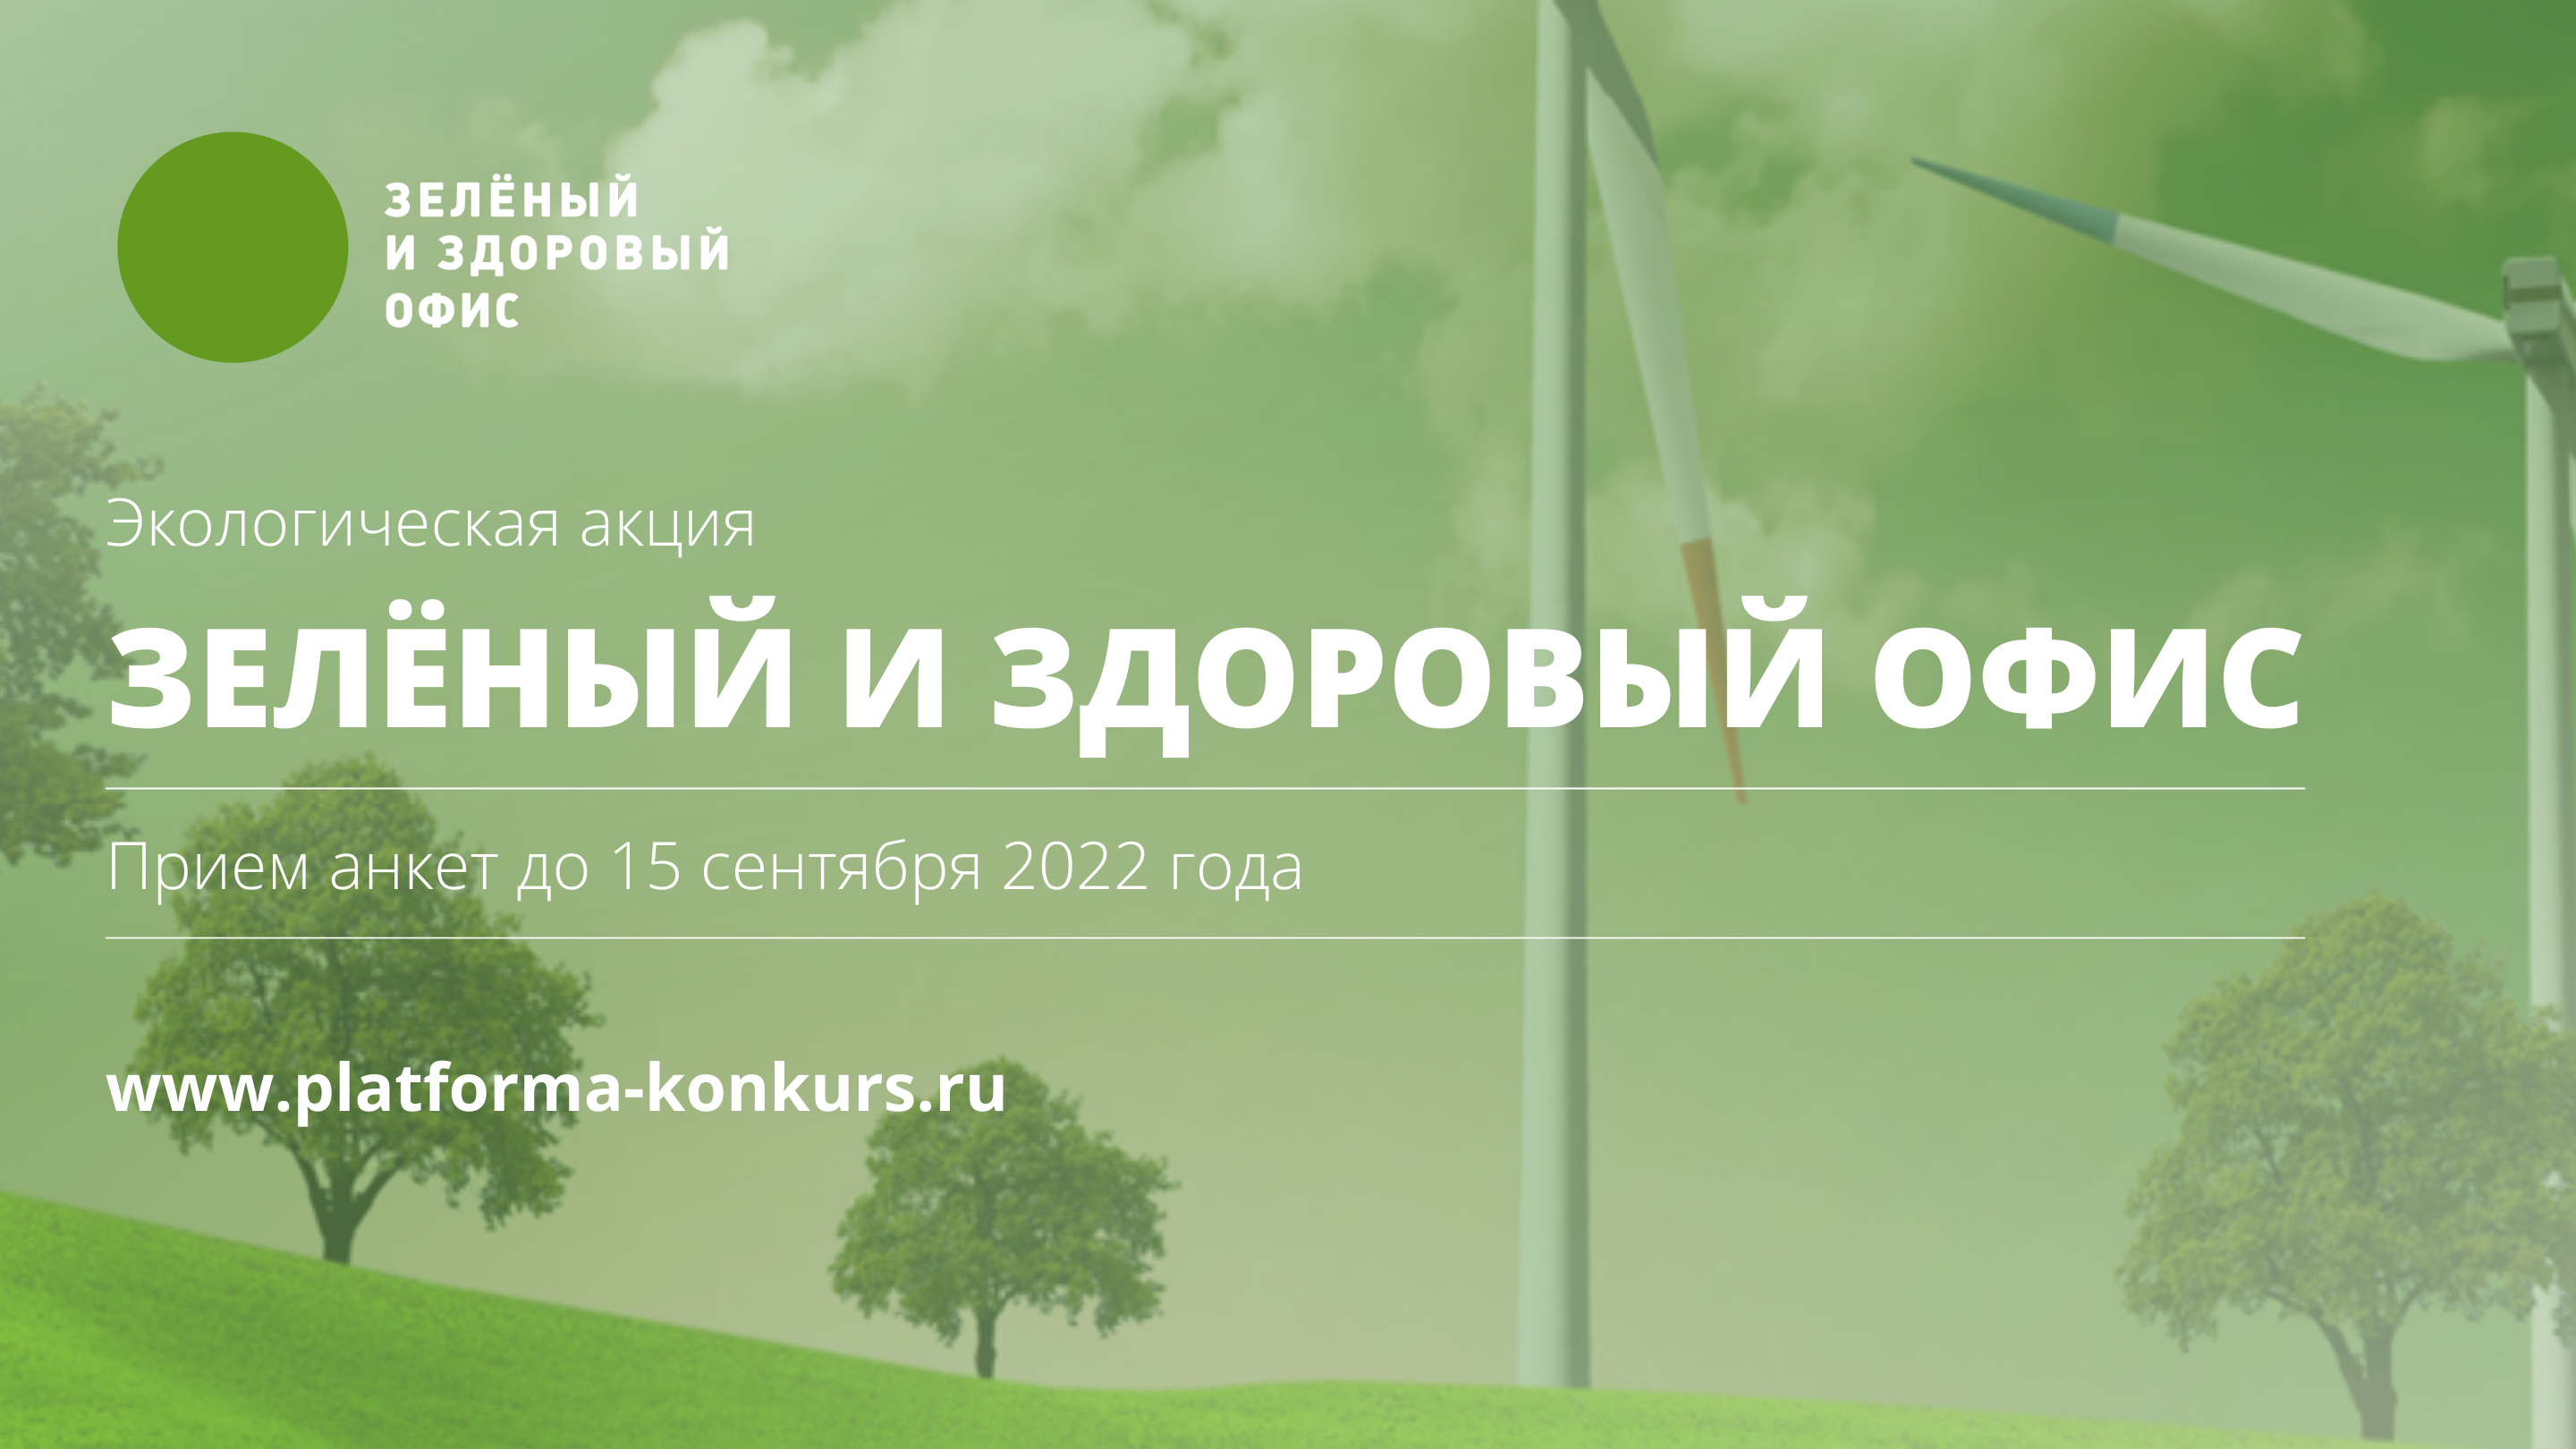 Компания MBS  проведет конкурс «Зеленый и здоровый офис 2022»,